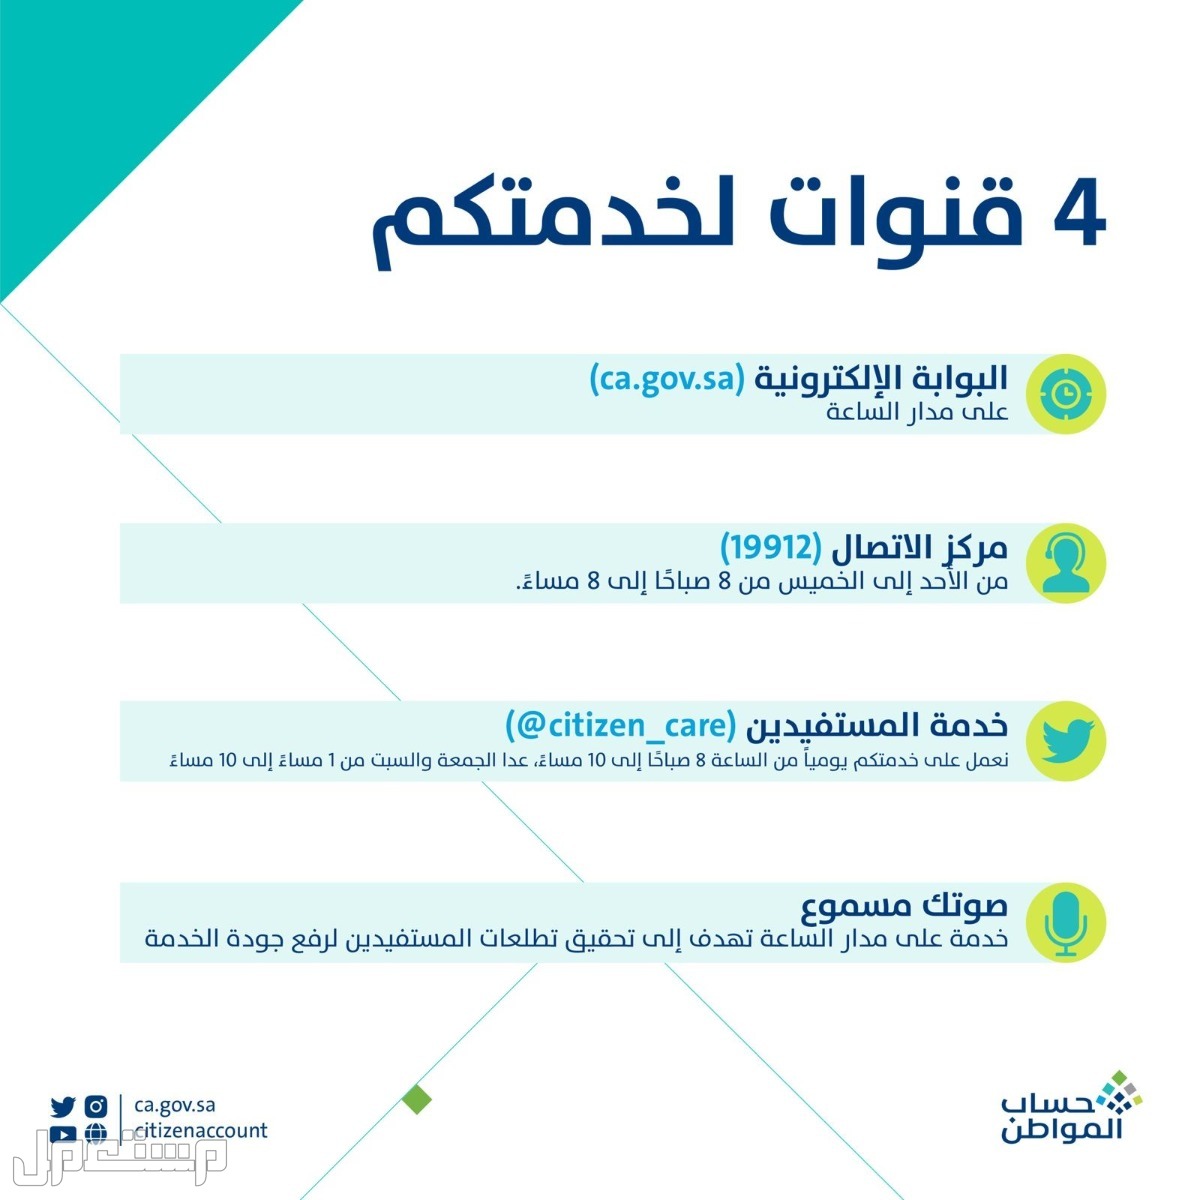 حساب المواطن: تعرف على حقيقة تأثير وثيقة العمل الحر على الدعم في عمان